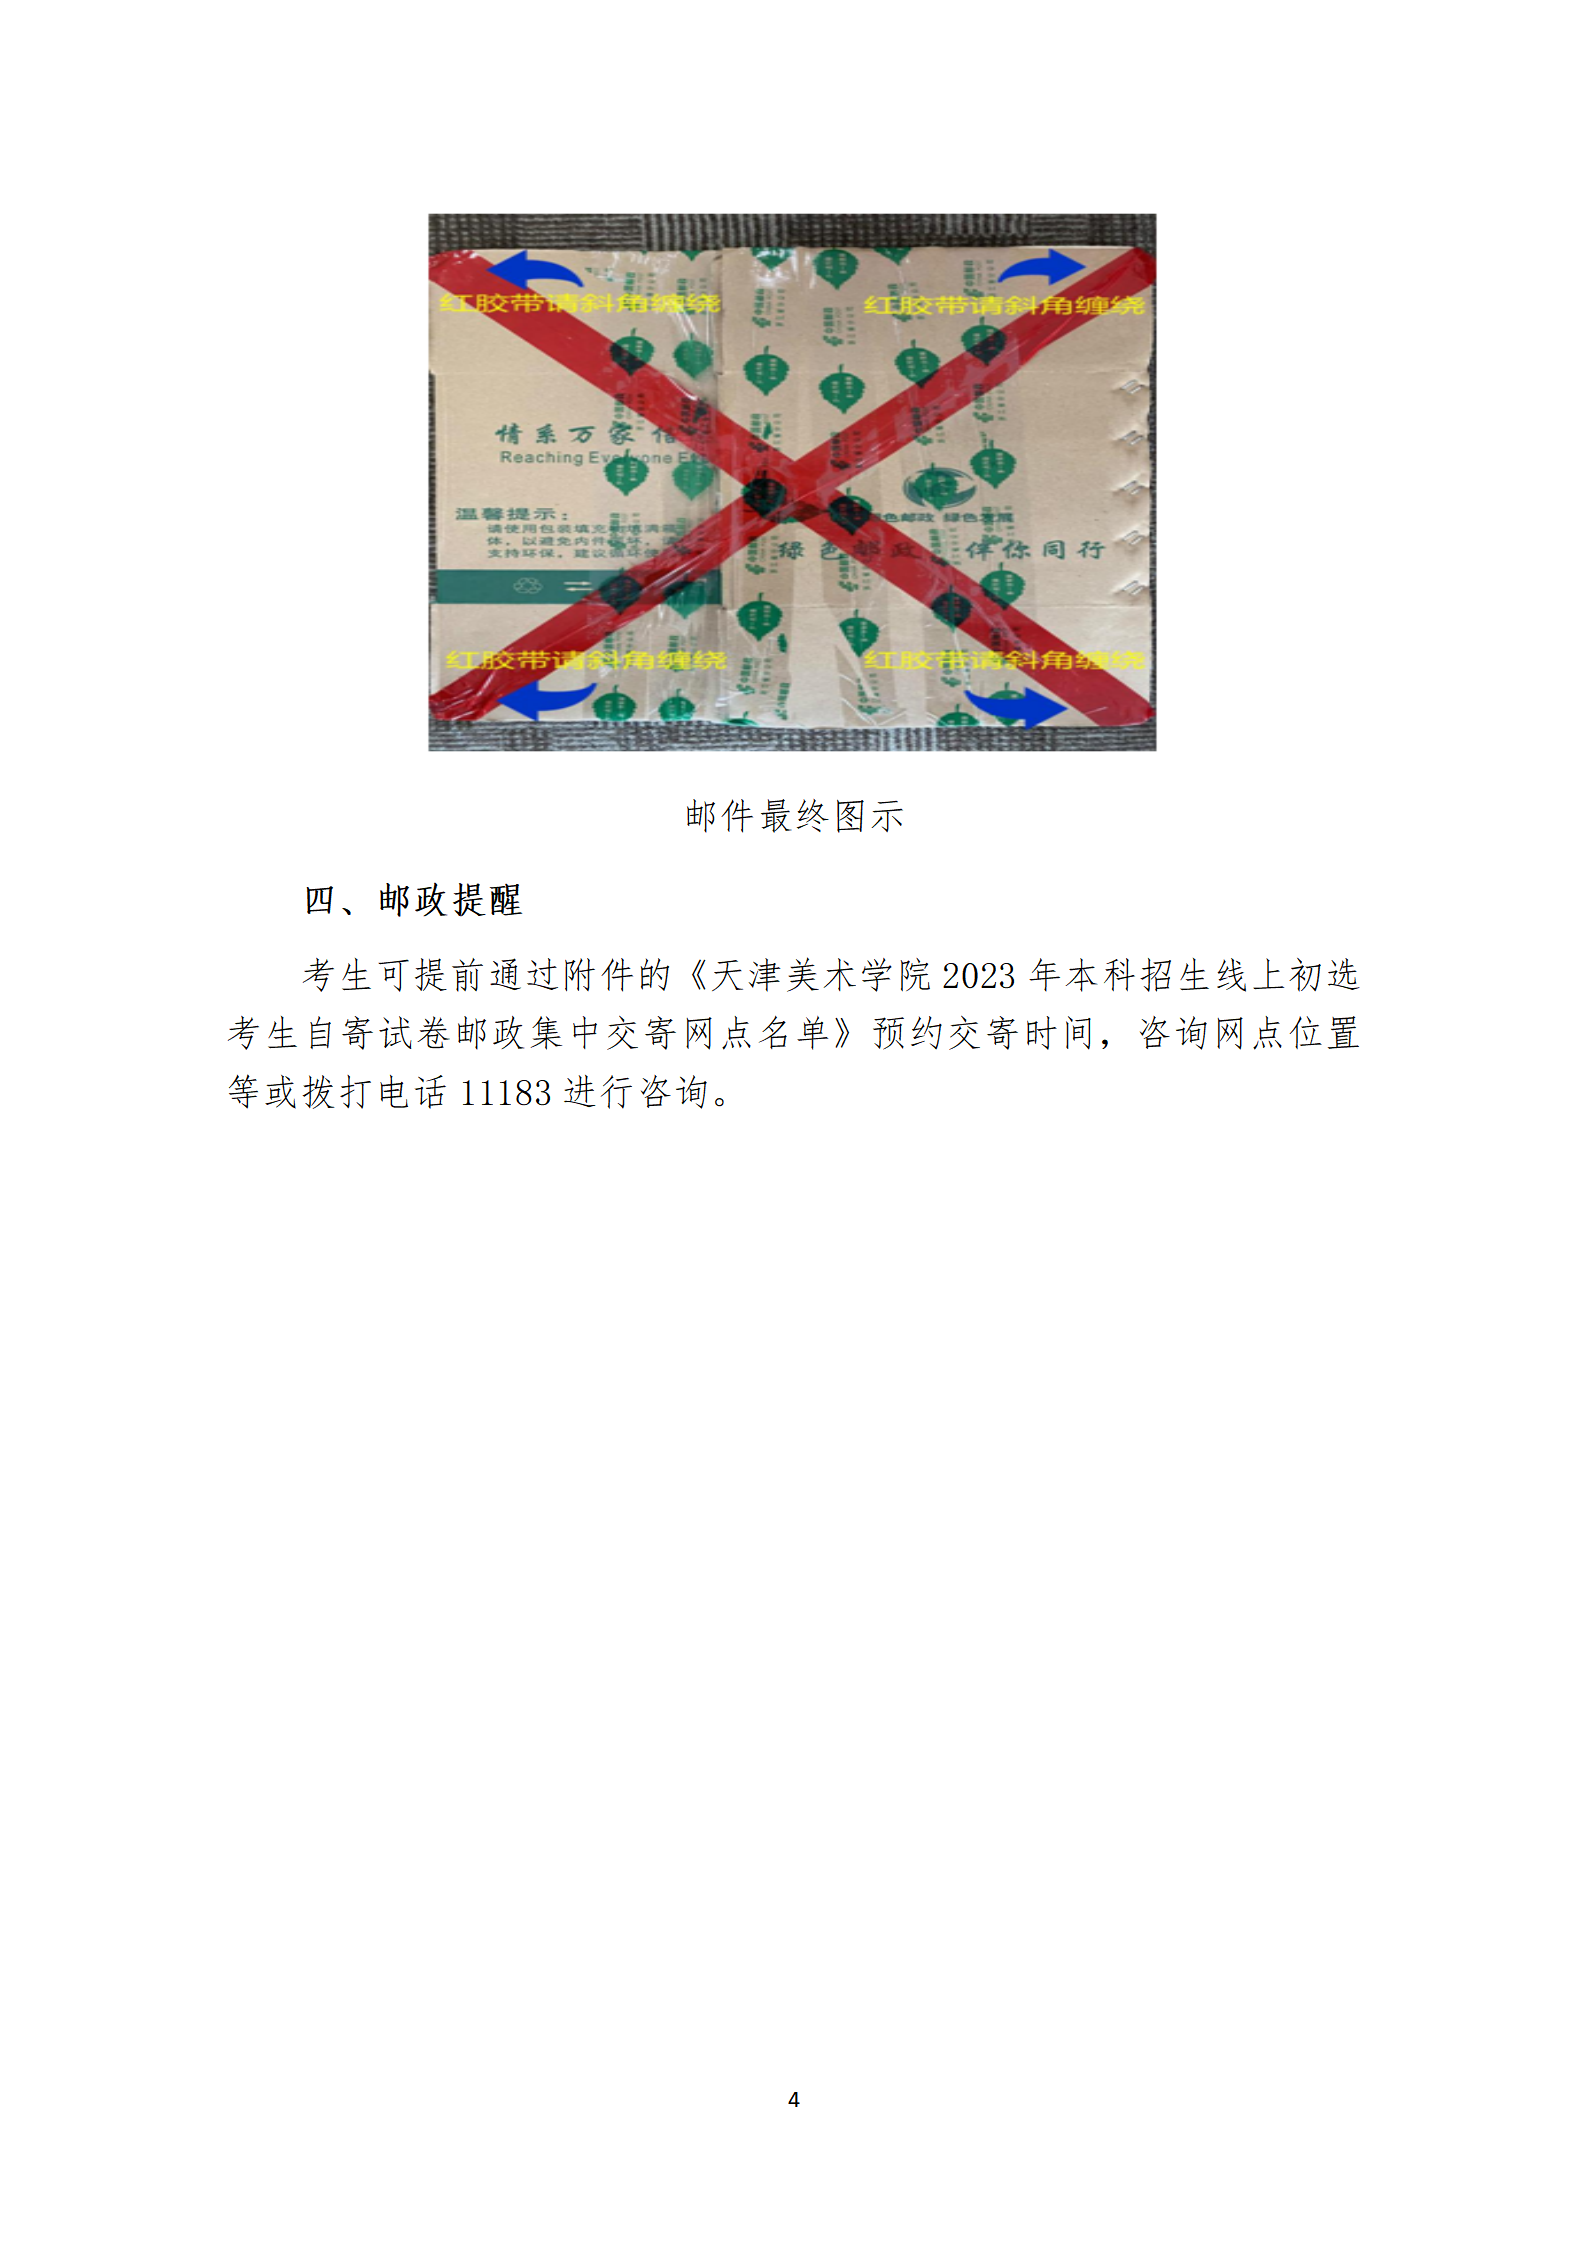 附件1：天津美术学院2023年本科招生线上初选试卷封装及邮寄要求_04.png